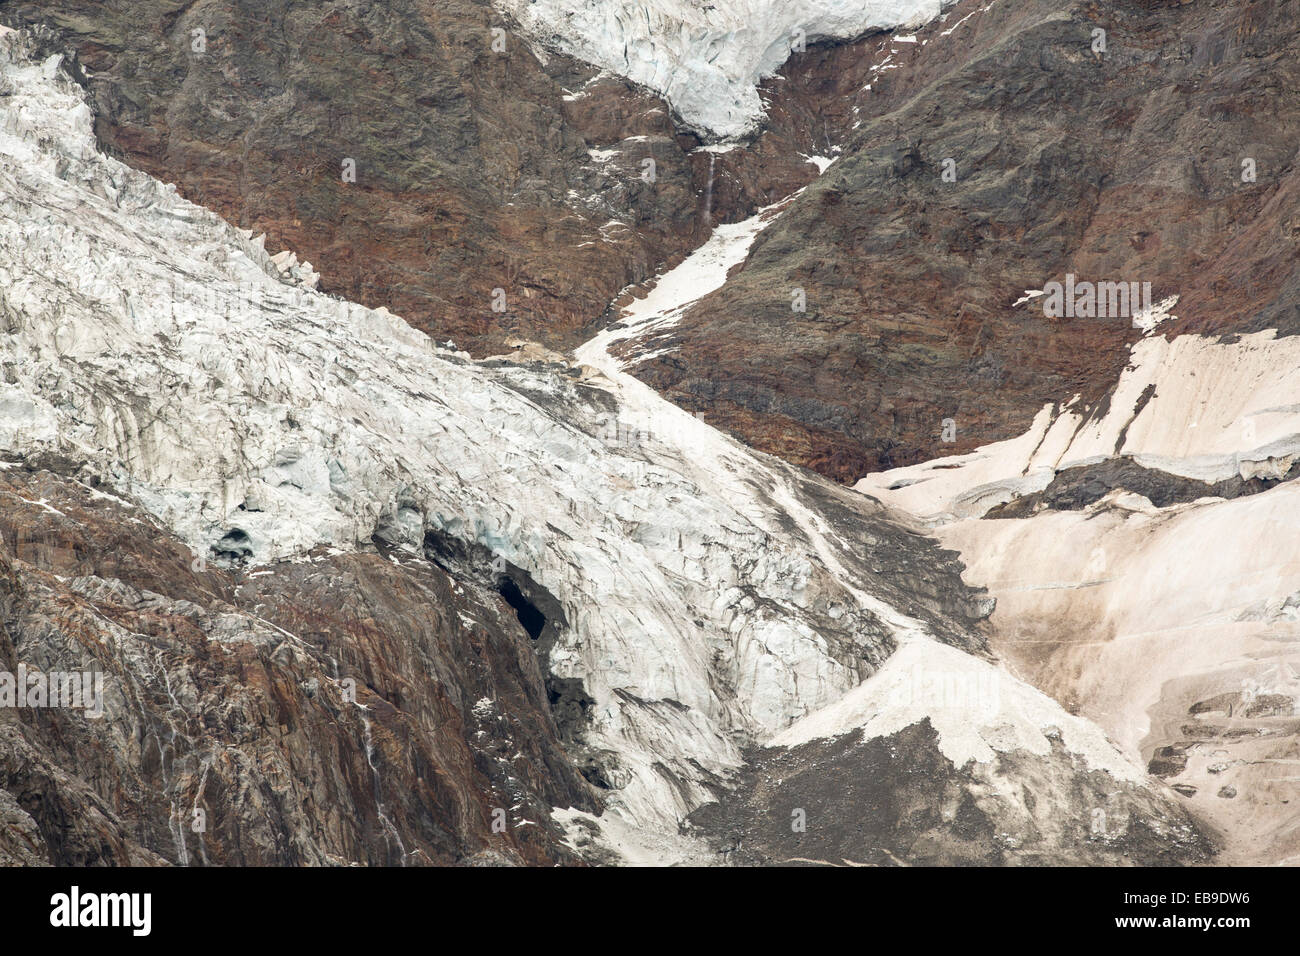 Le glacier de Bionnassay en retraite rapidement venant de la chaîne du Mont-Blanc. Il a reculé de plus de 200 mètres au cours des vingt dernières années. Banque D'Images